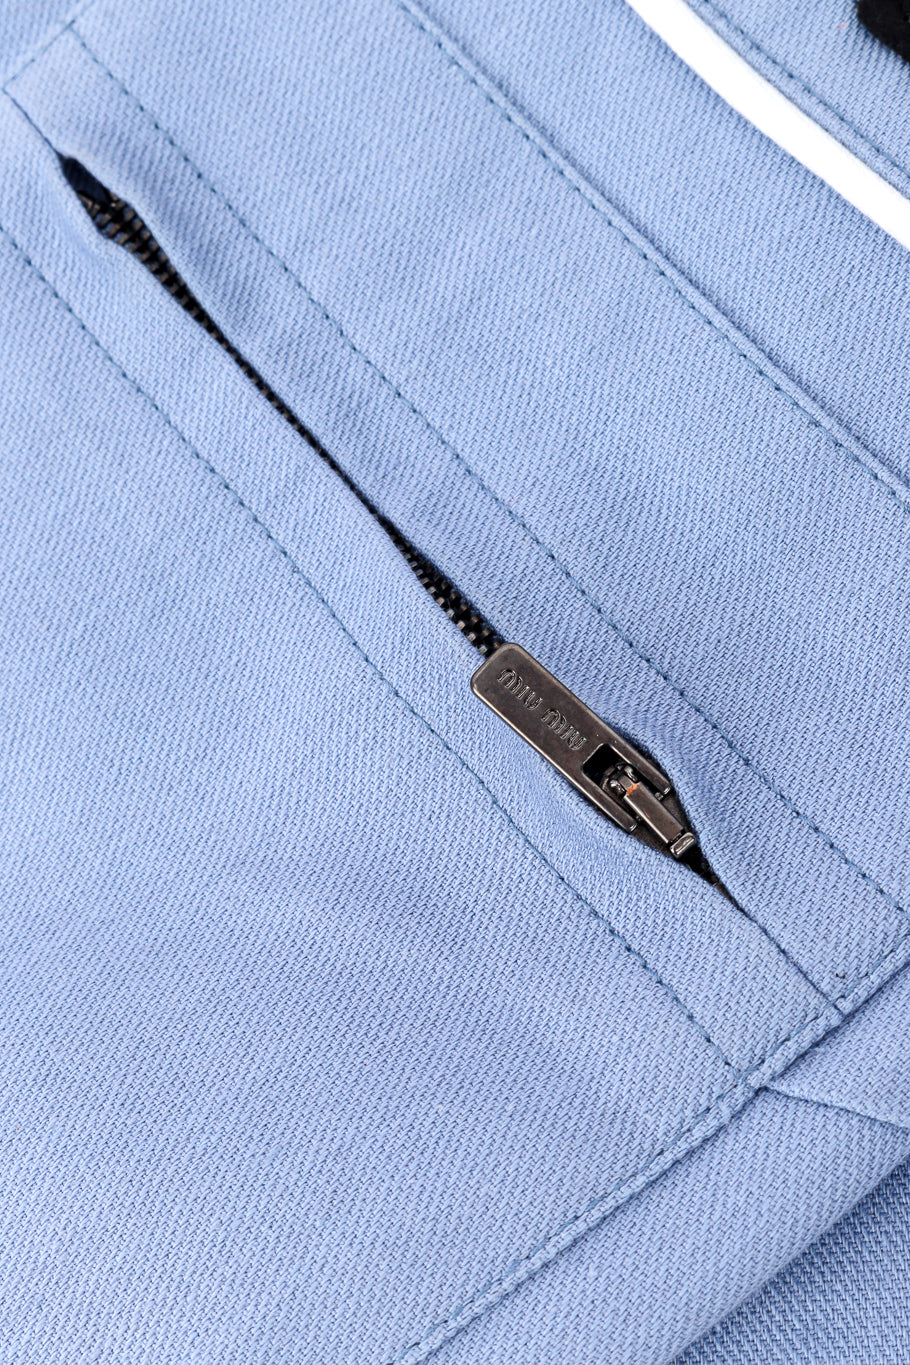 Miu Miu 2018 Resort Patch Coveralls zipper pocket closeup @recess la